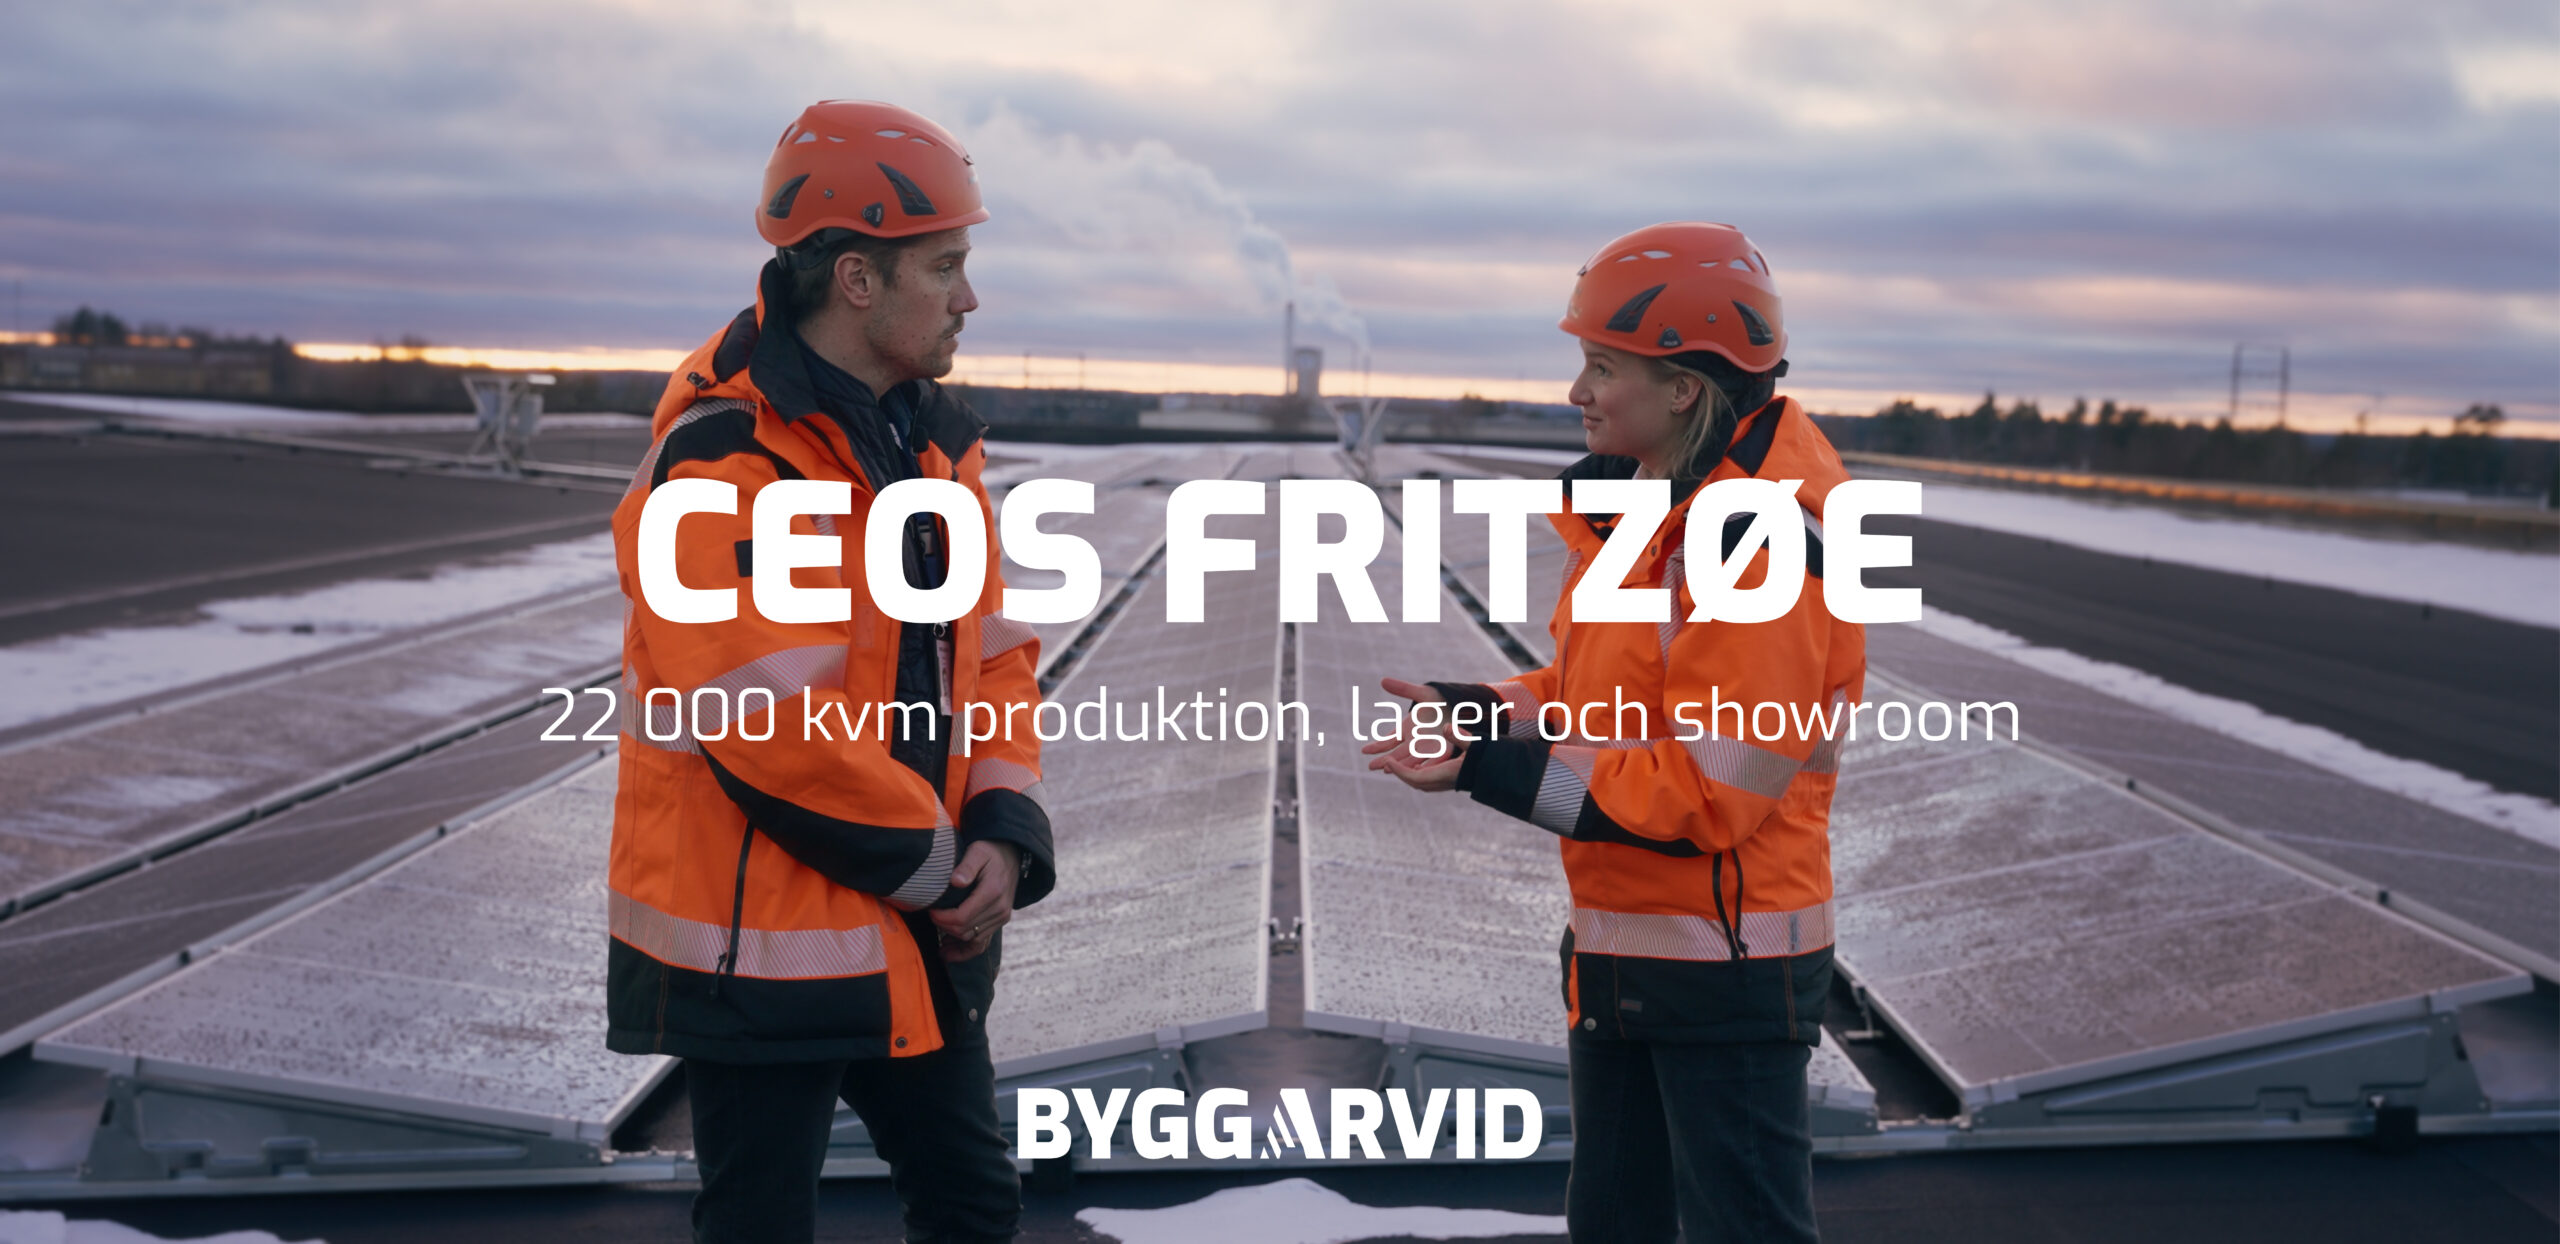 ByggArvid bygger 22 000 kvm produktionsanläggning år Ceos Fritzoe i Nässjö